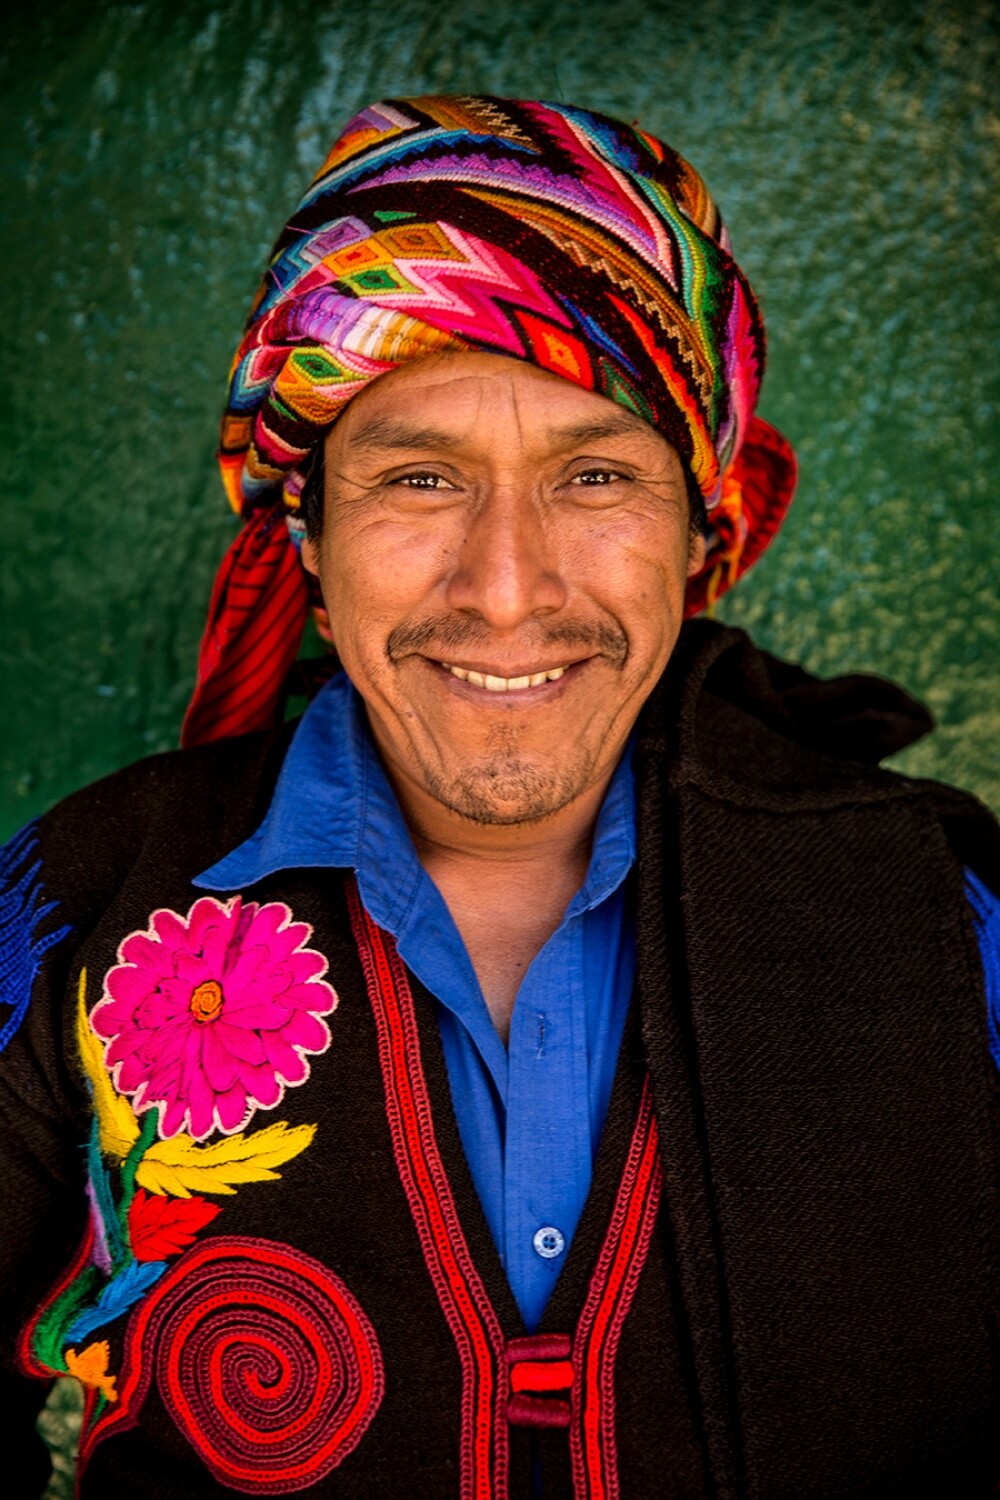 inspiringlife.pt - Fotógrafo mostra a diversidade cultural de 84 países através dos rostos dos seus habitantes